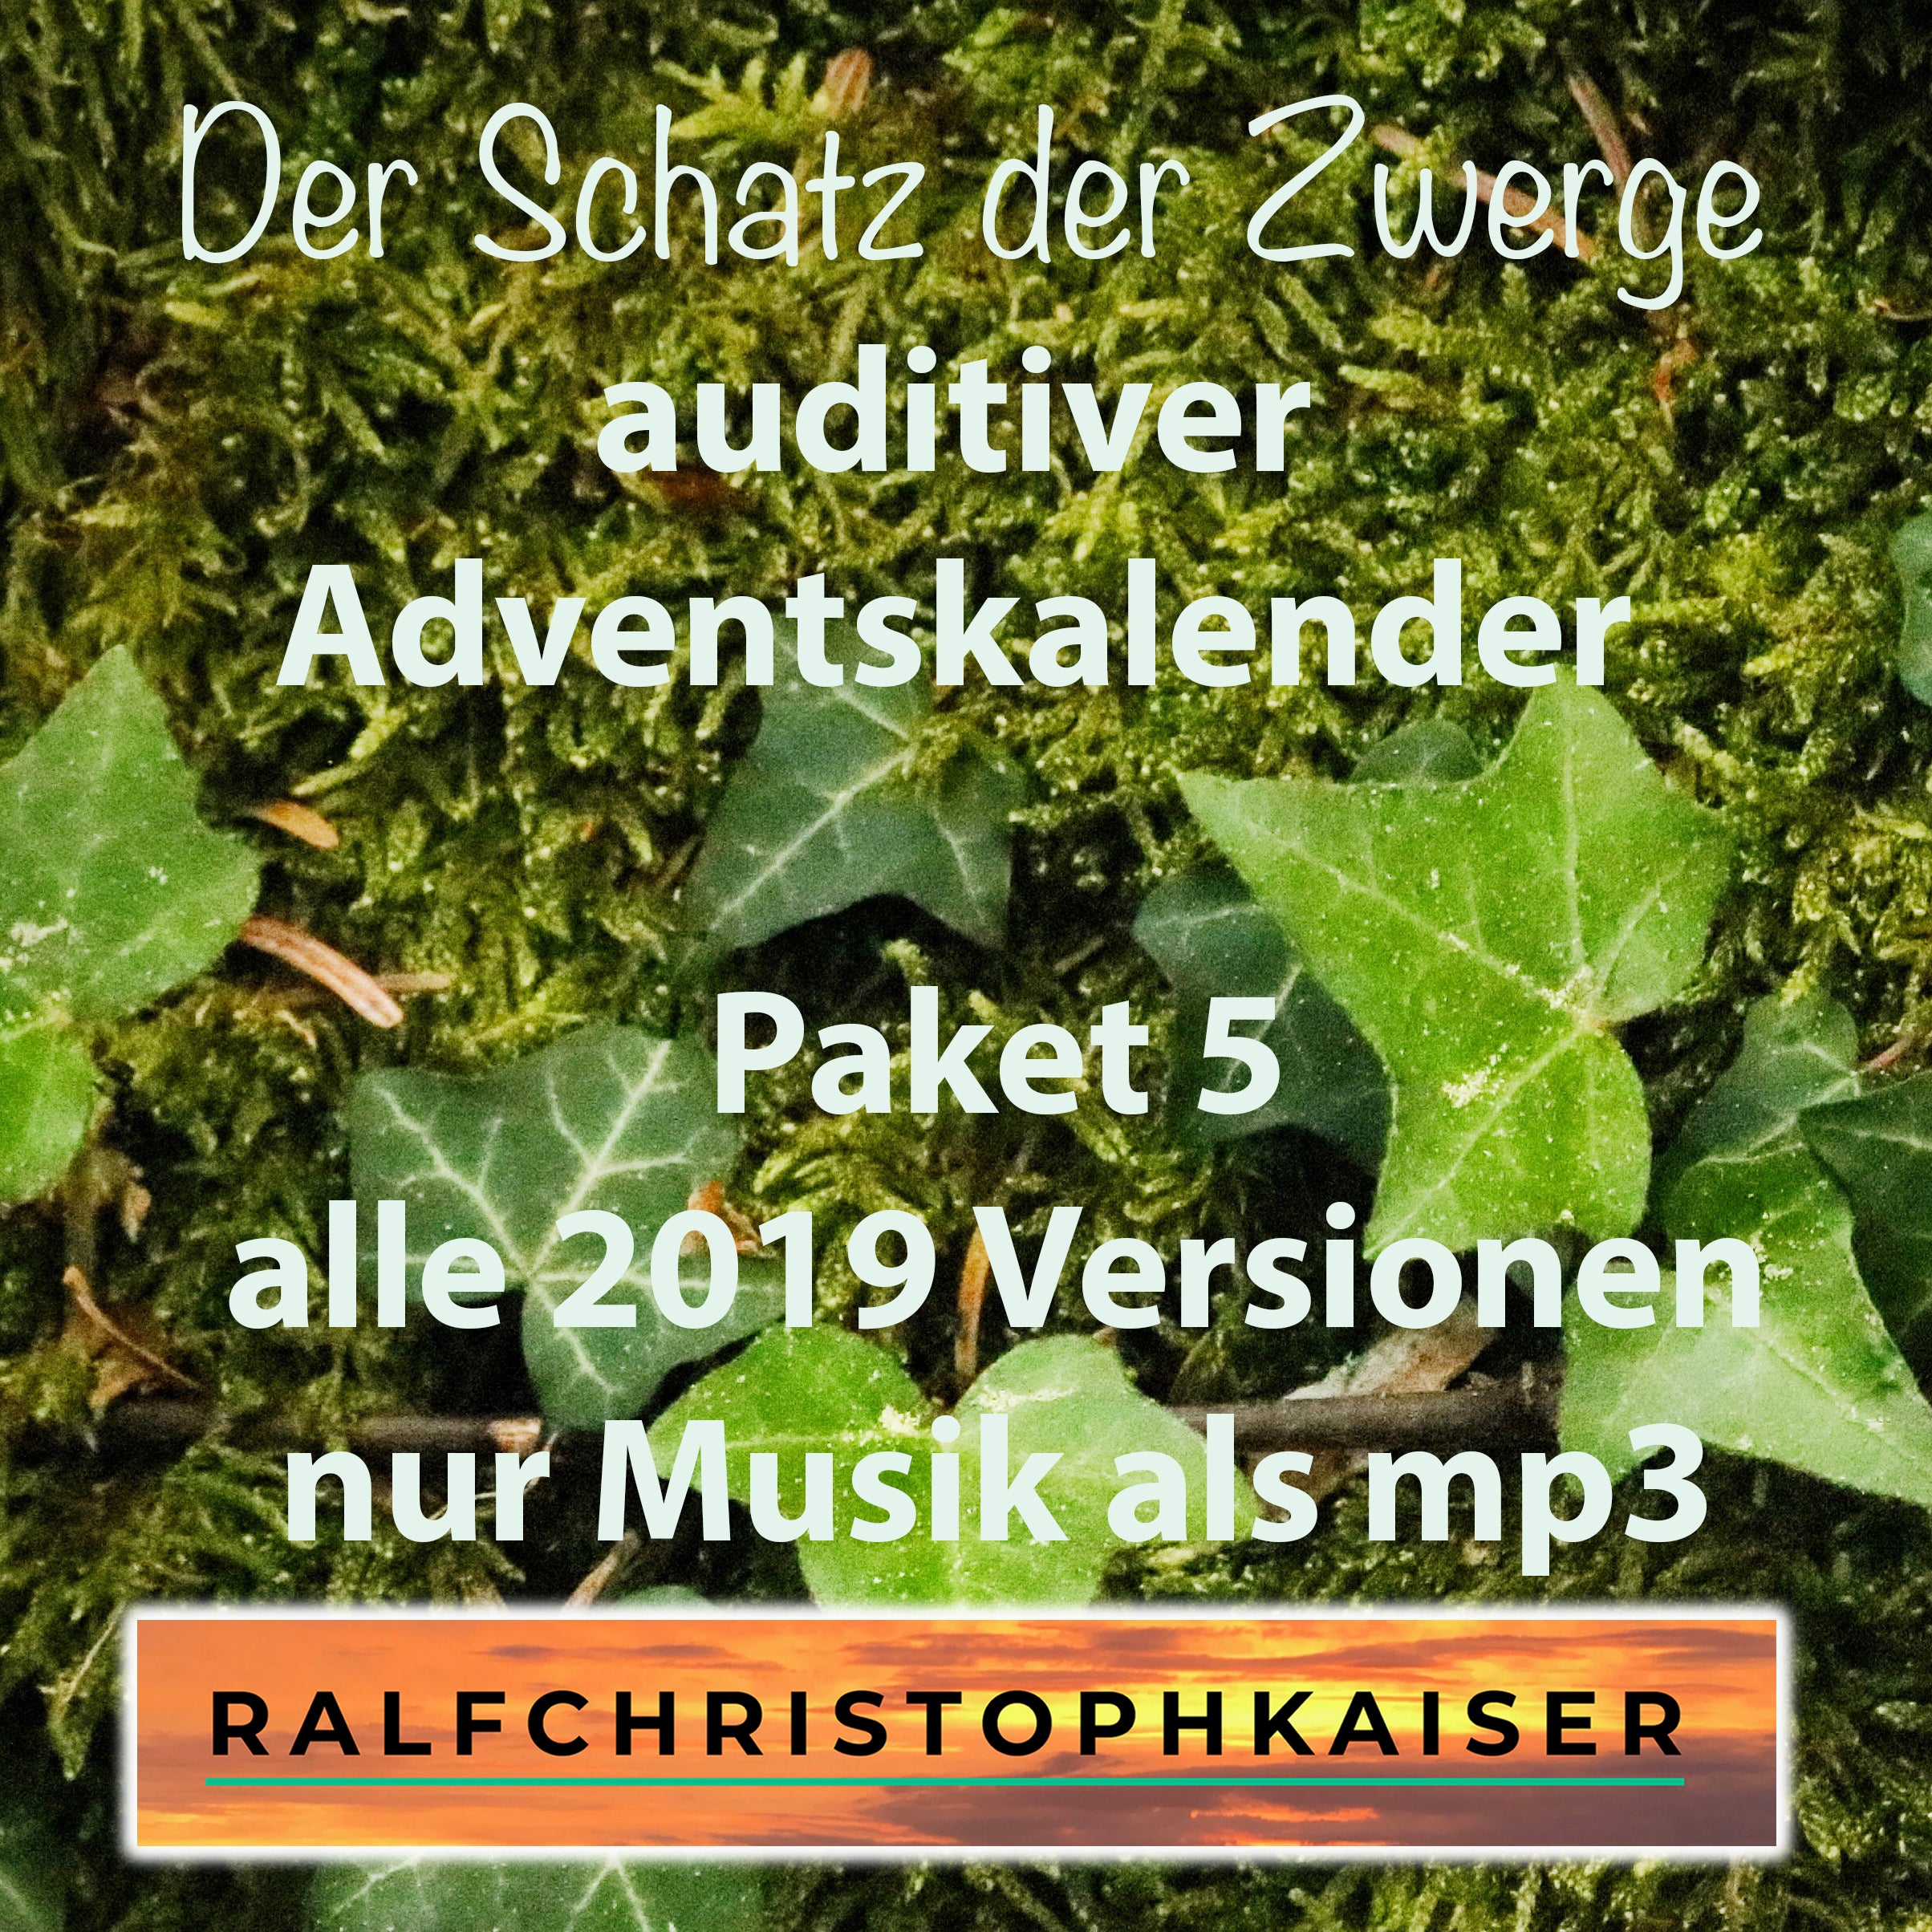 Der Schatz der Zwerge auditiver Adventskalender Paket 5 alle 2019 Versionen nur Musik als mp3 - ralfchristophkaiser.com Musik und Noten